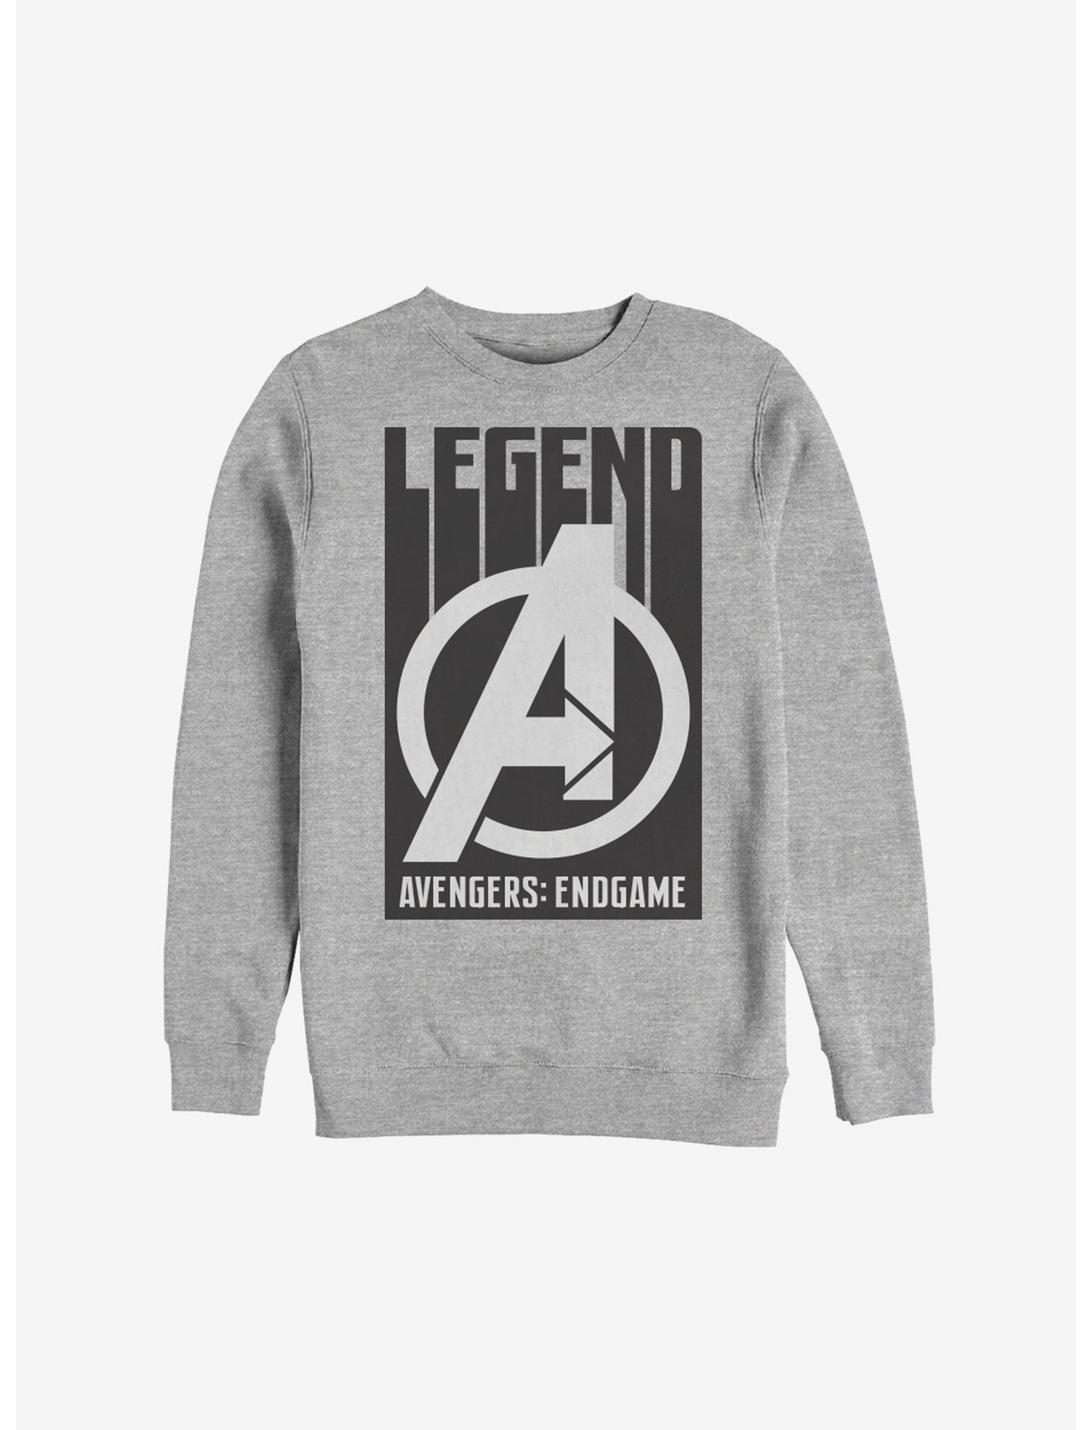 Marvel Avengers: Endgame Legend Sweatshirt, ATH HTR, hi-res